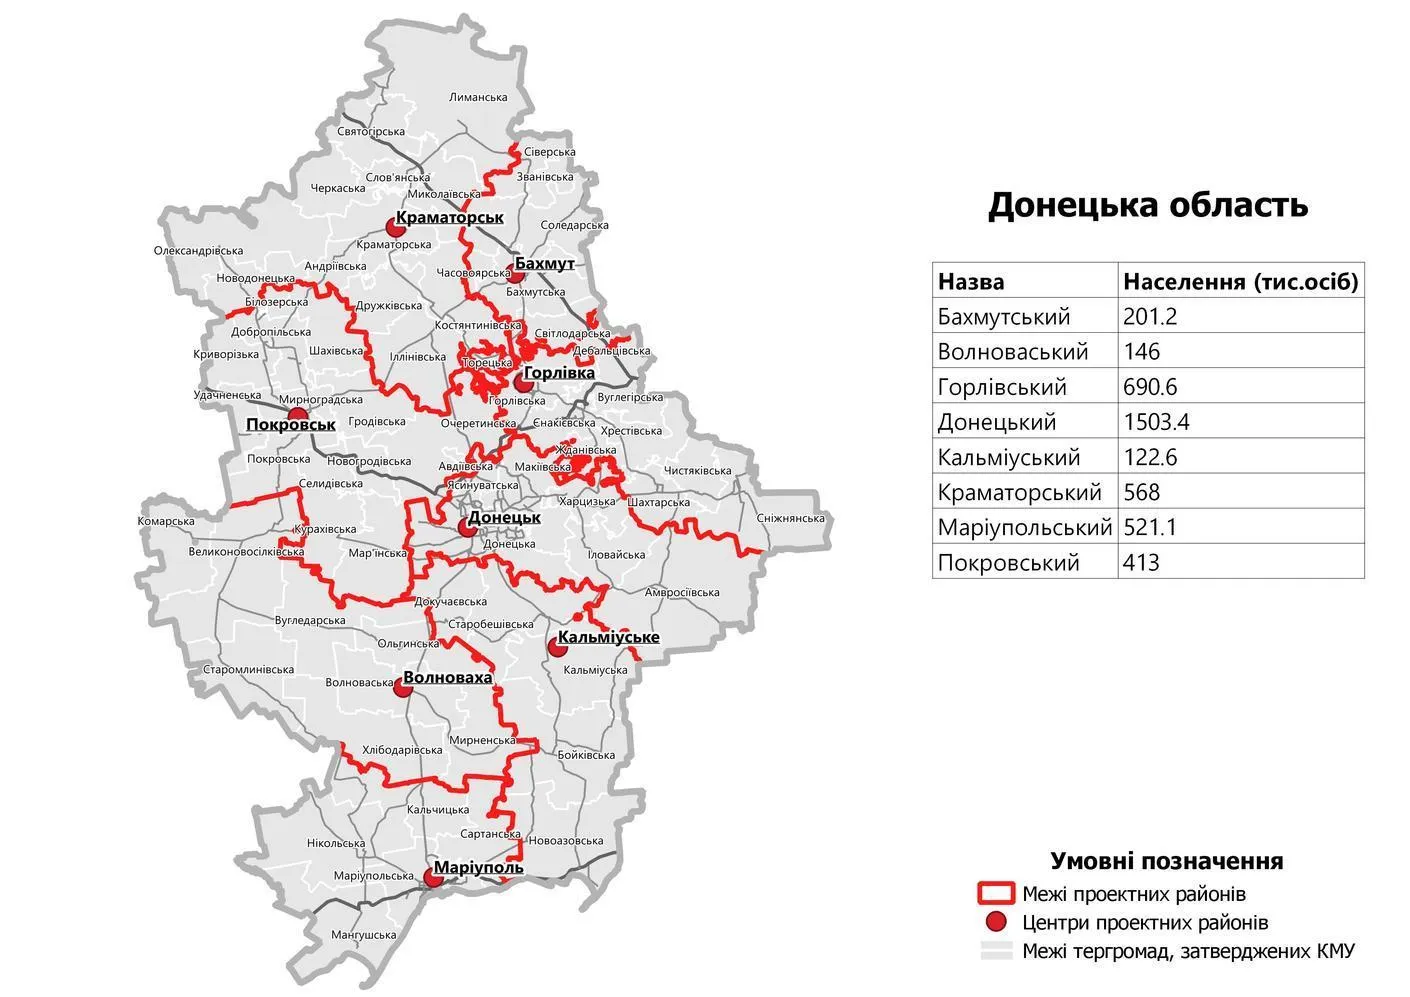 Нові райони, новий адміністративний поділ, Донеччина, Донецька область